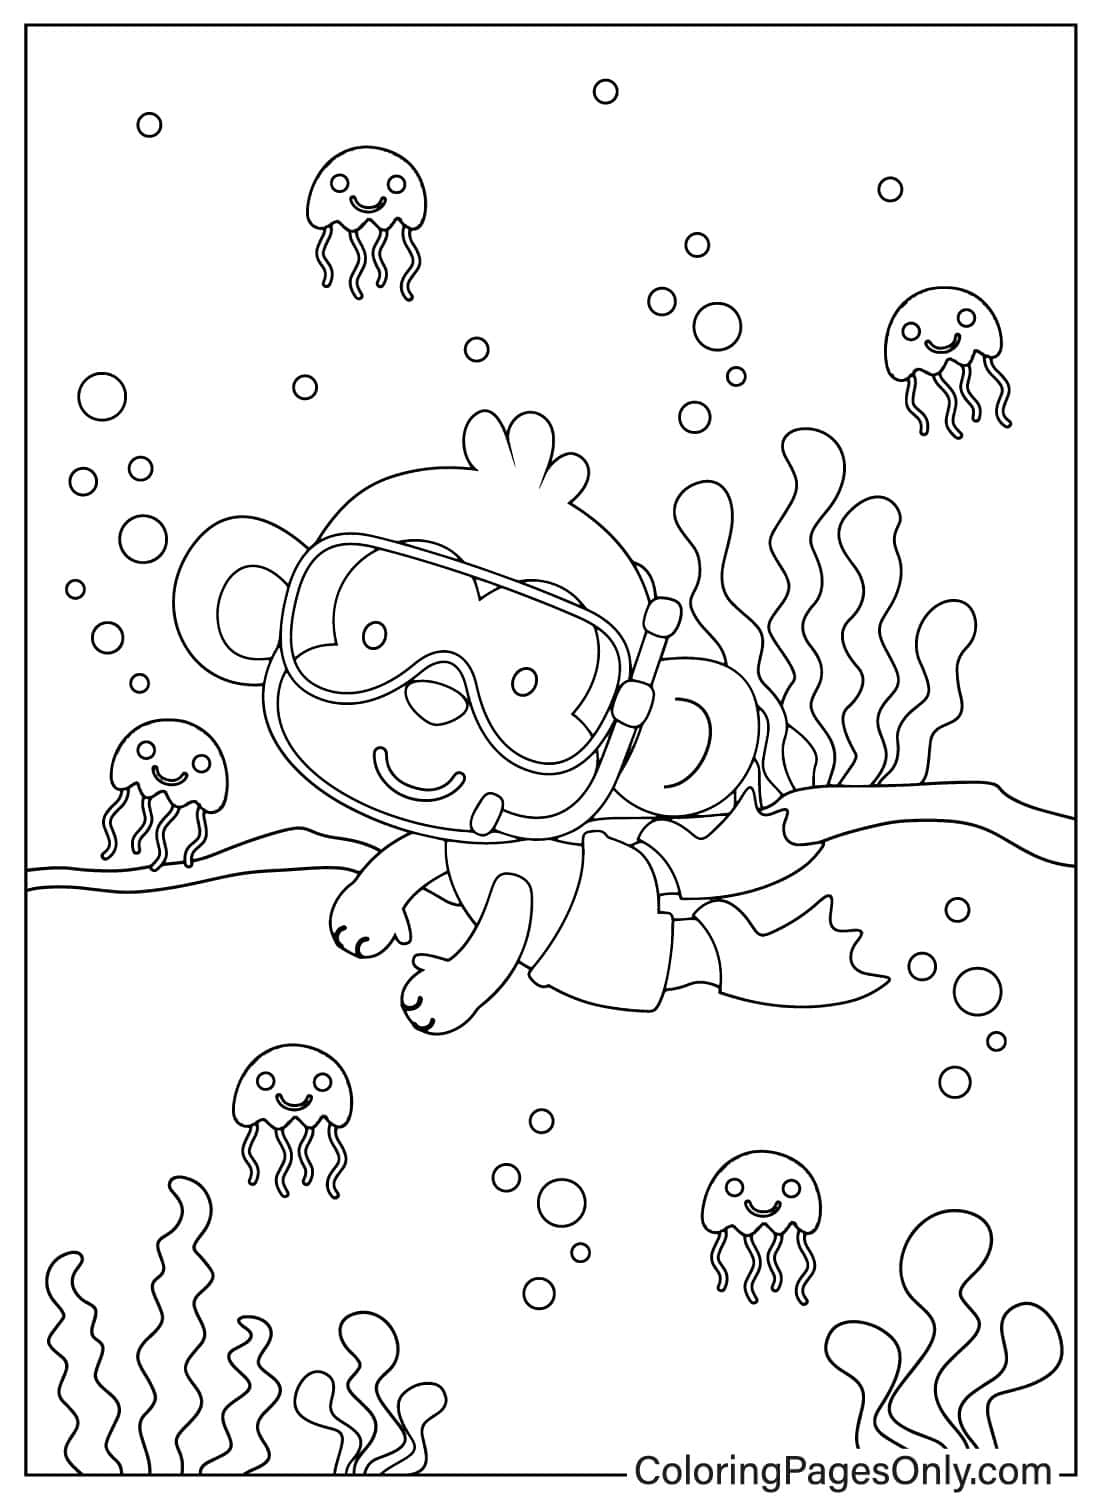 猴子在海里与水母一起游泳